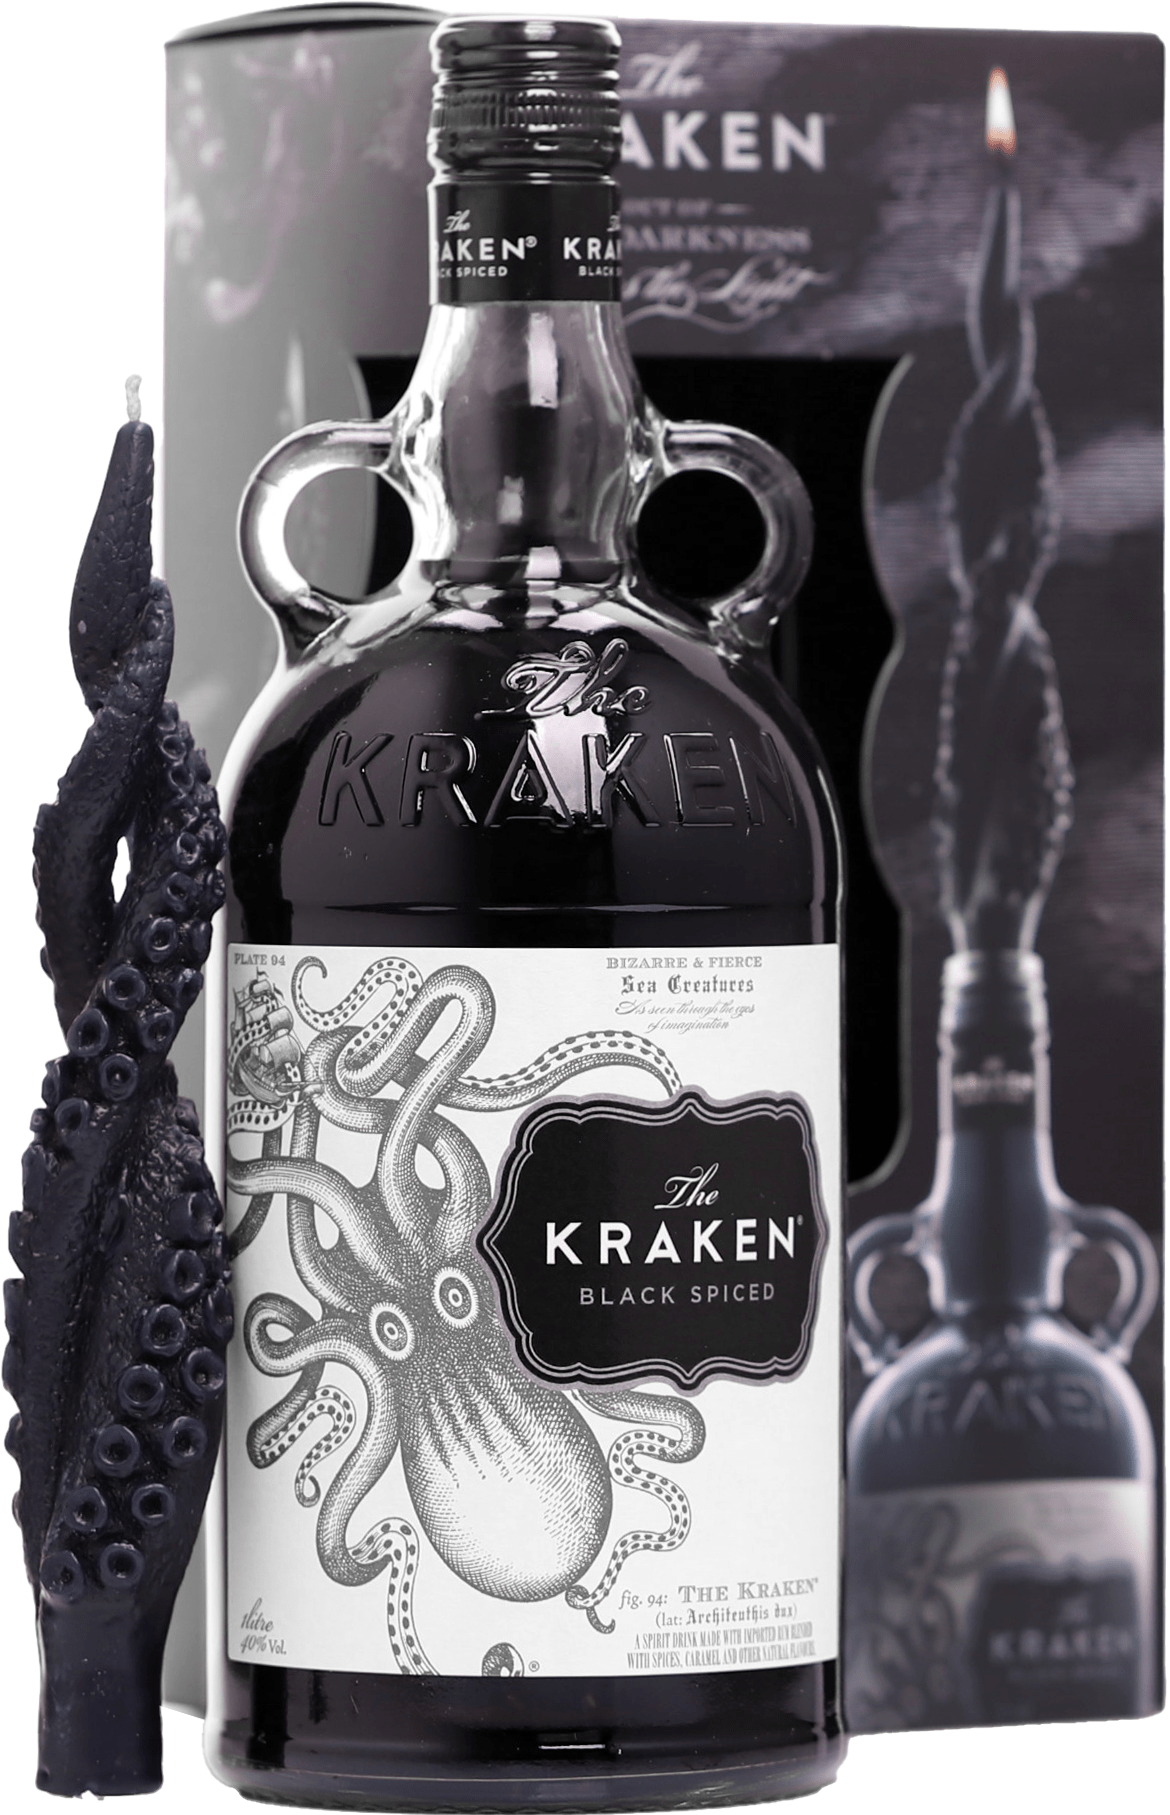 Kraken Black Spiced Rum + svíčka 40% 1l (dárkové balení kazeta)